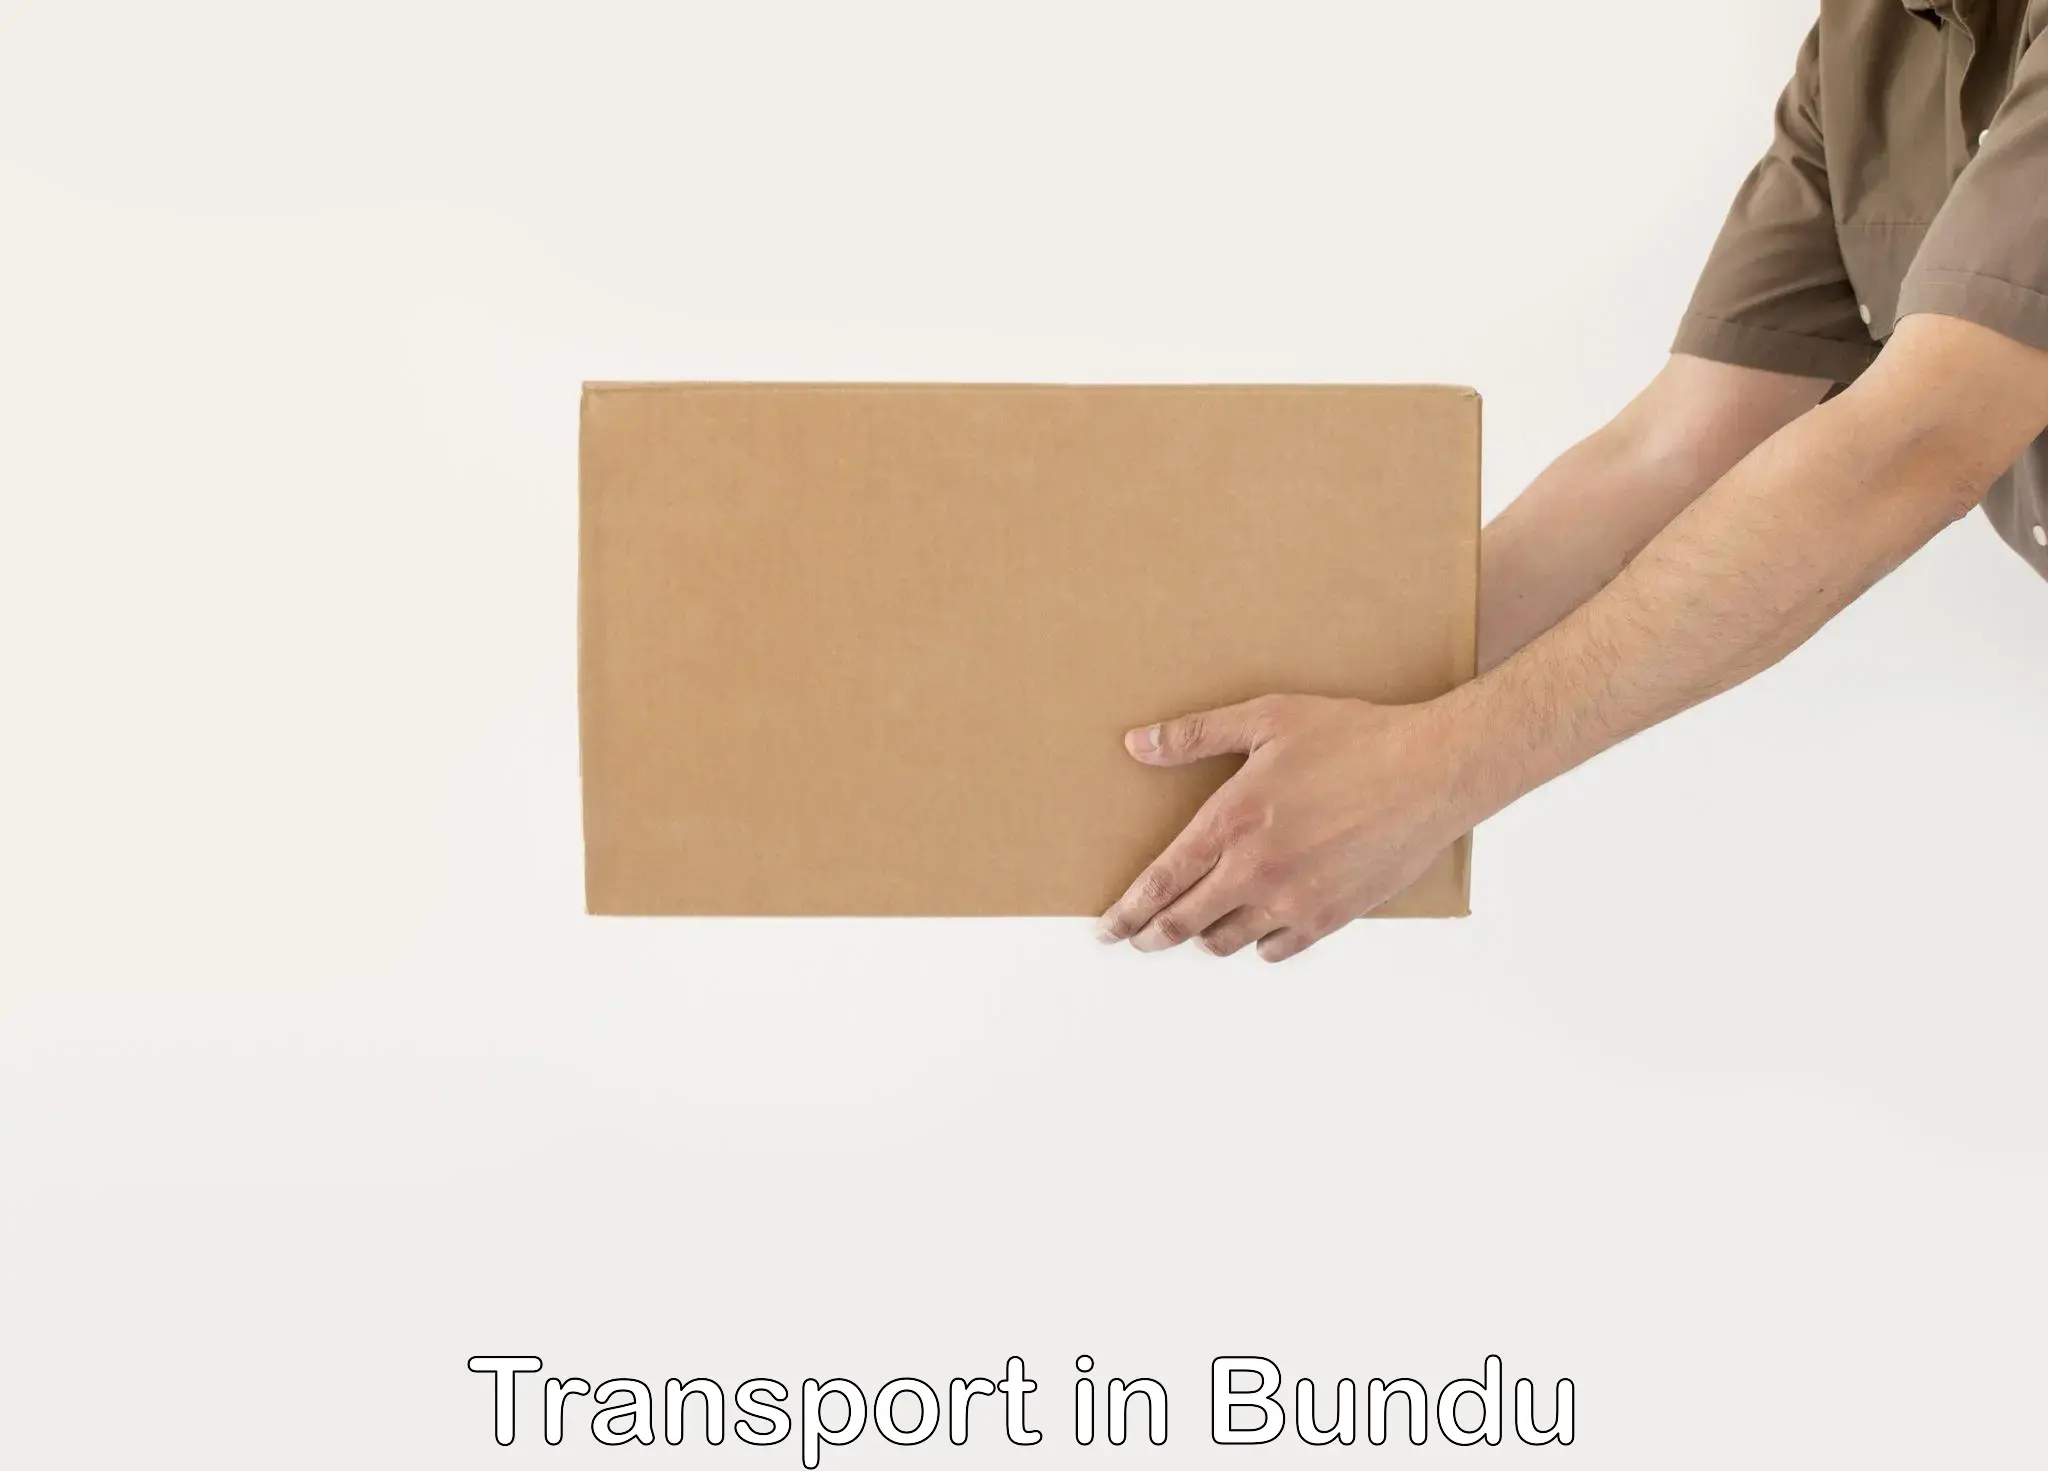 Material transport services in Bundu